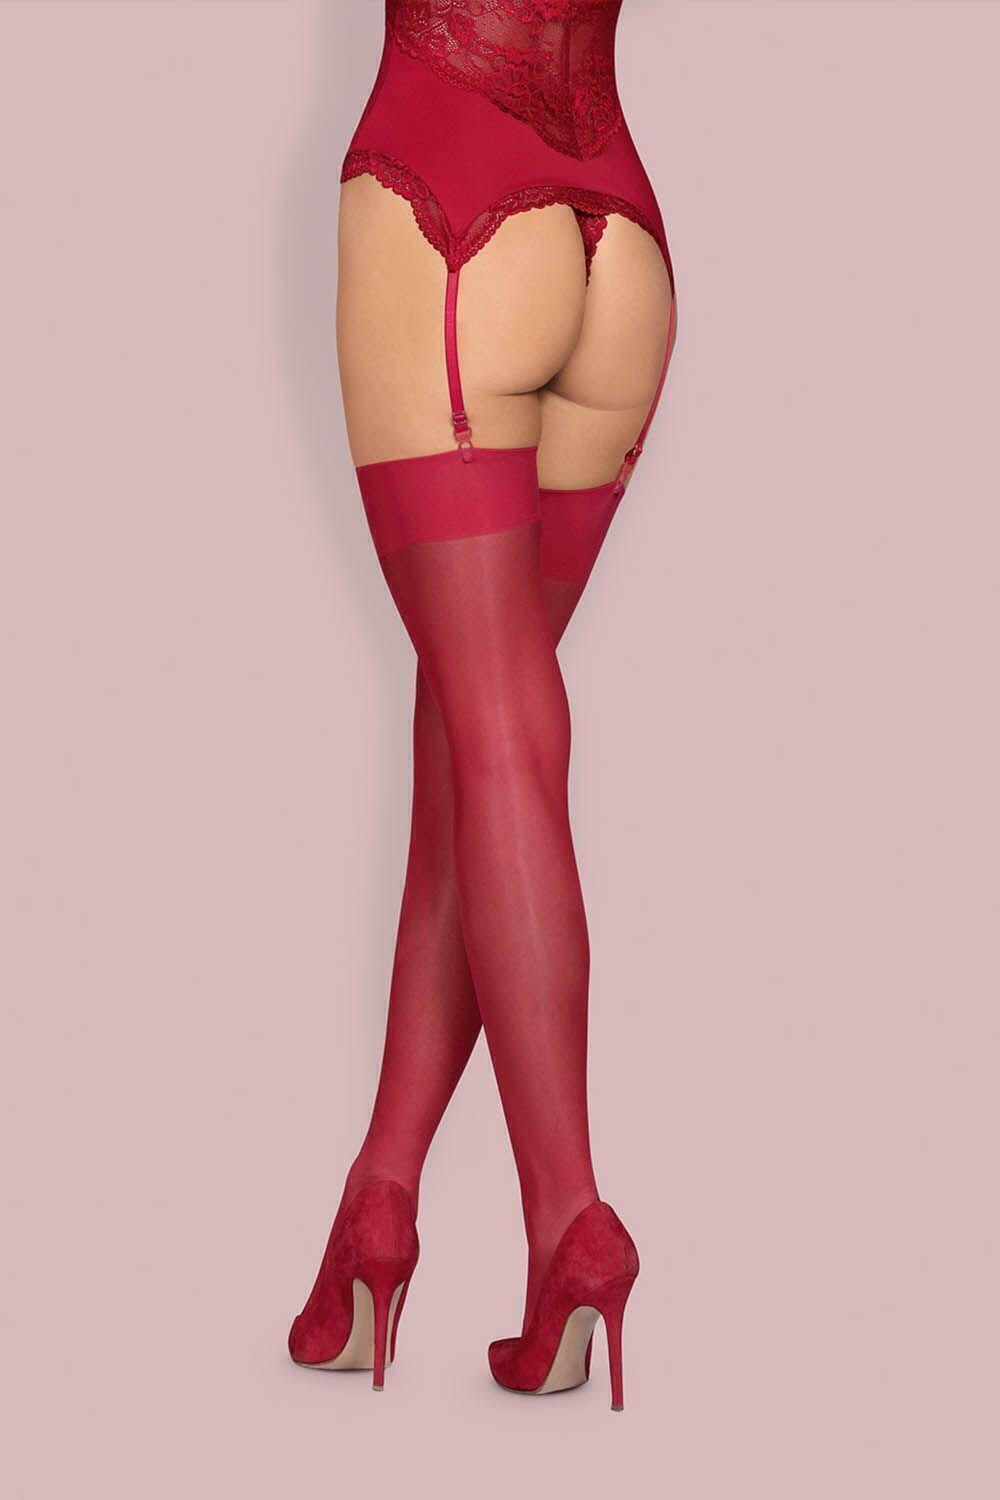 Чулки Obsessive S 800 stockings Ruby, Бордовый, L/XL